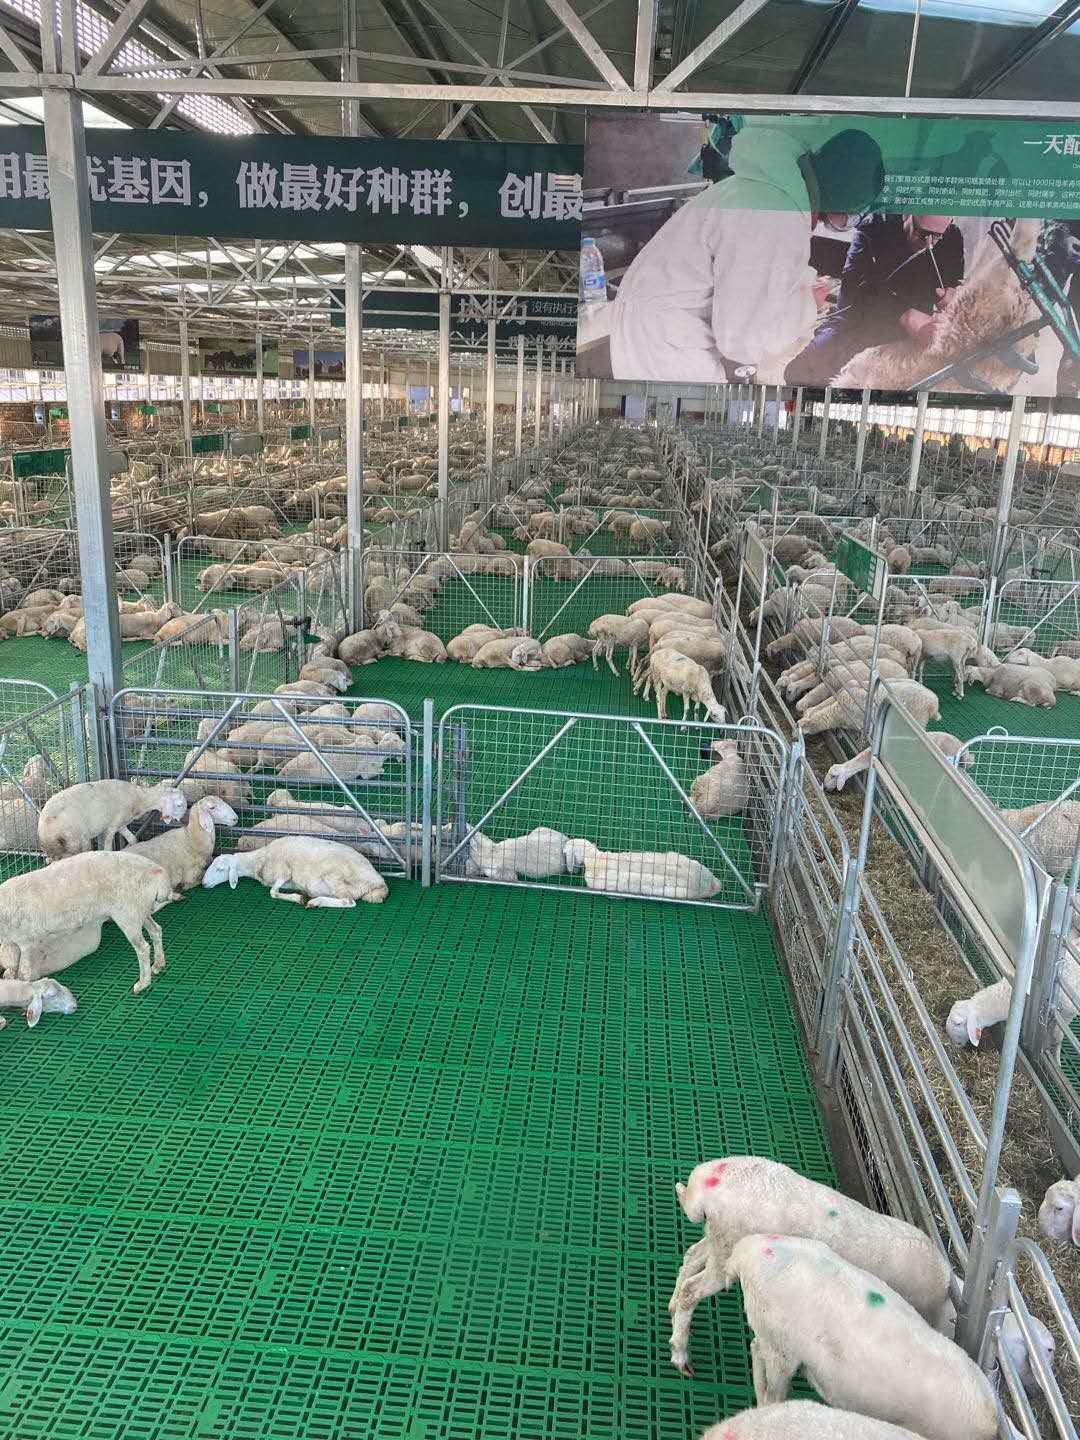 Plastic slat floor for goats